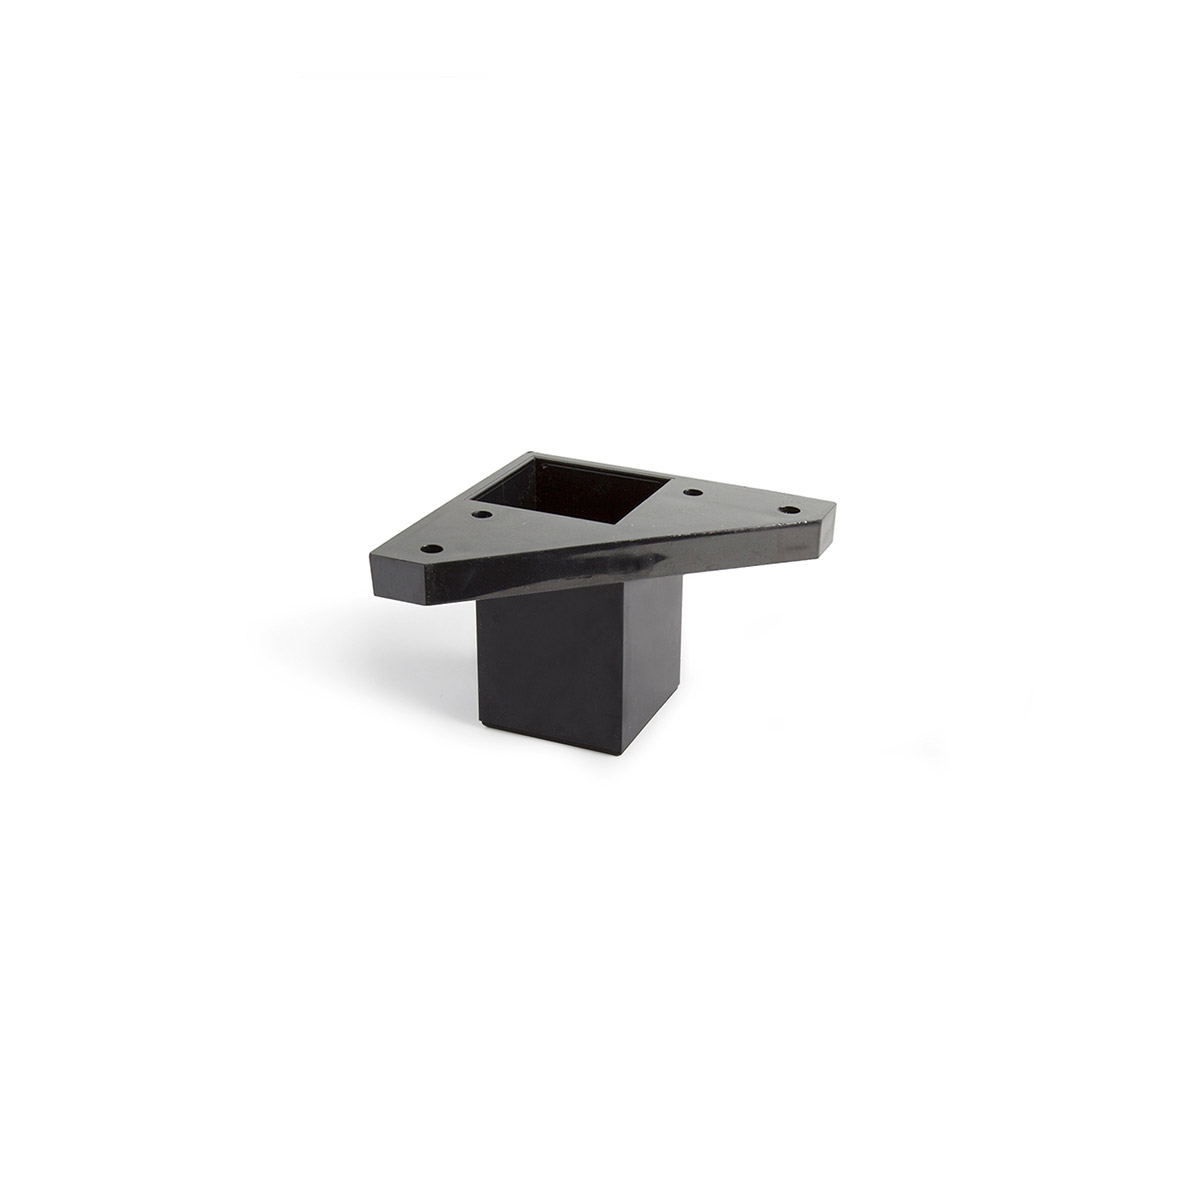 Pied carré en plastique d'une hauteur de 60 mm et finition noir. Dimensions: 42x42x60 mm